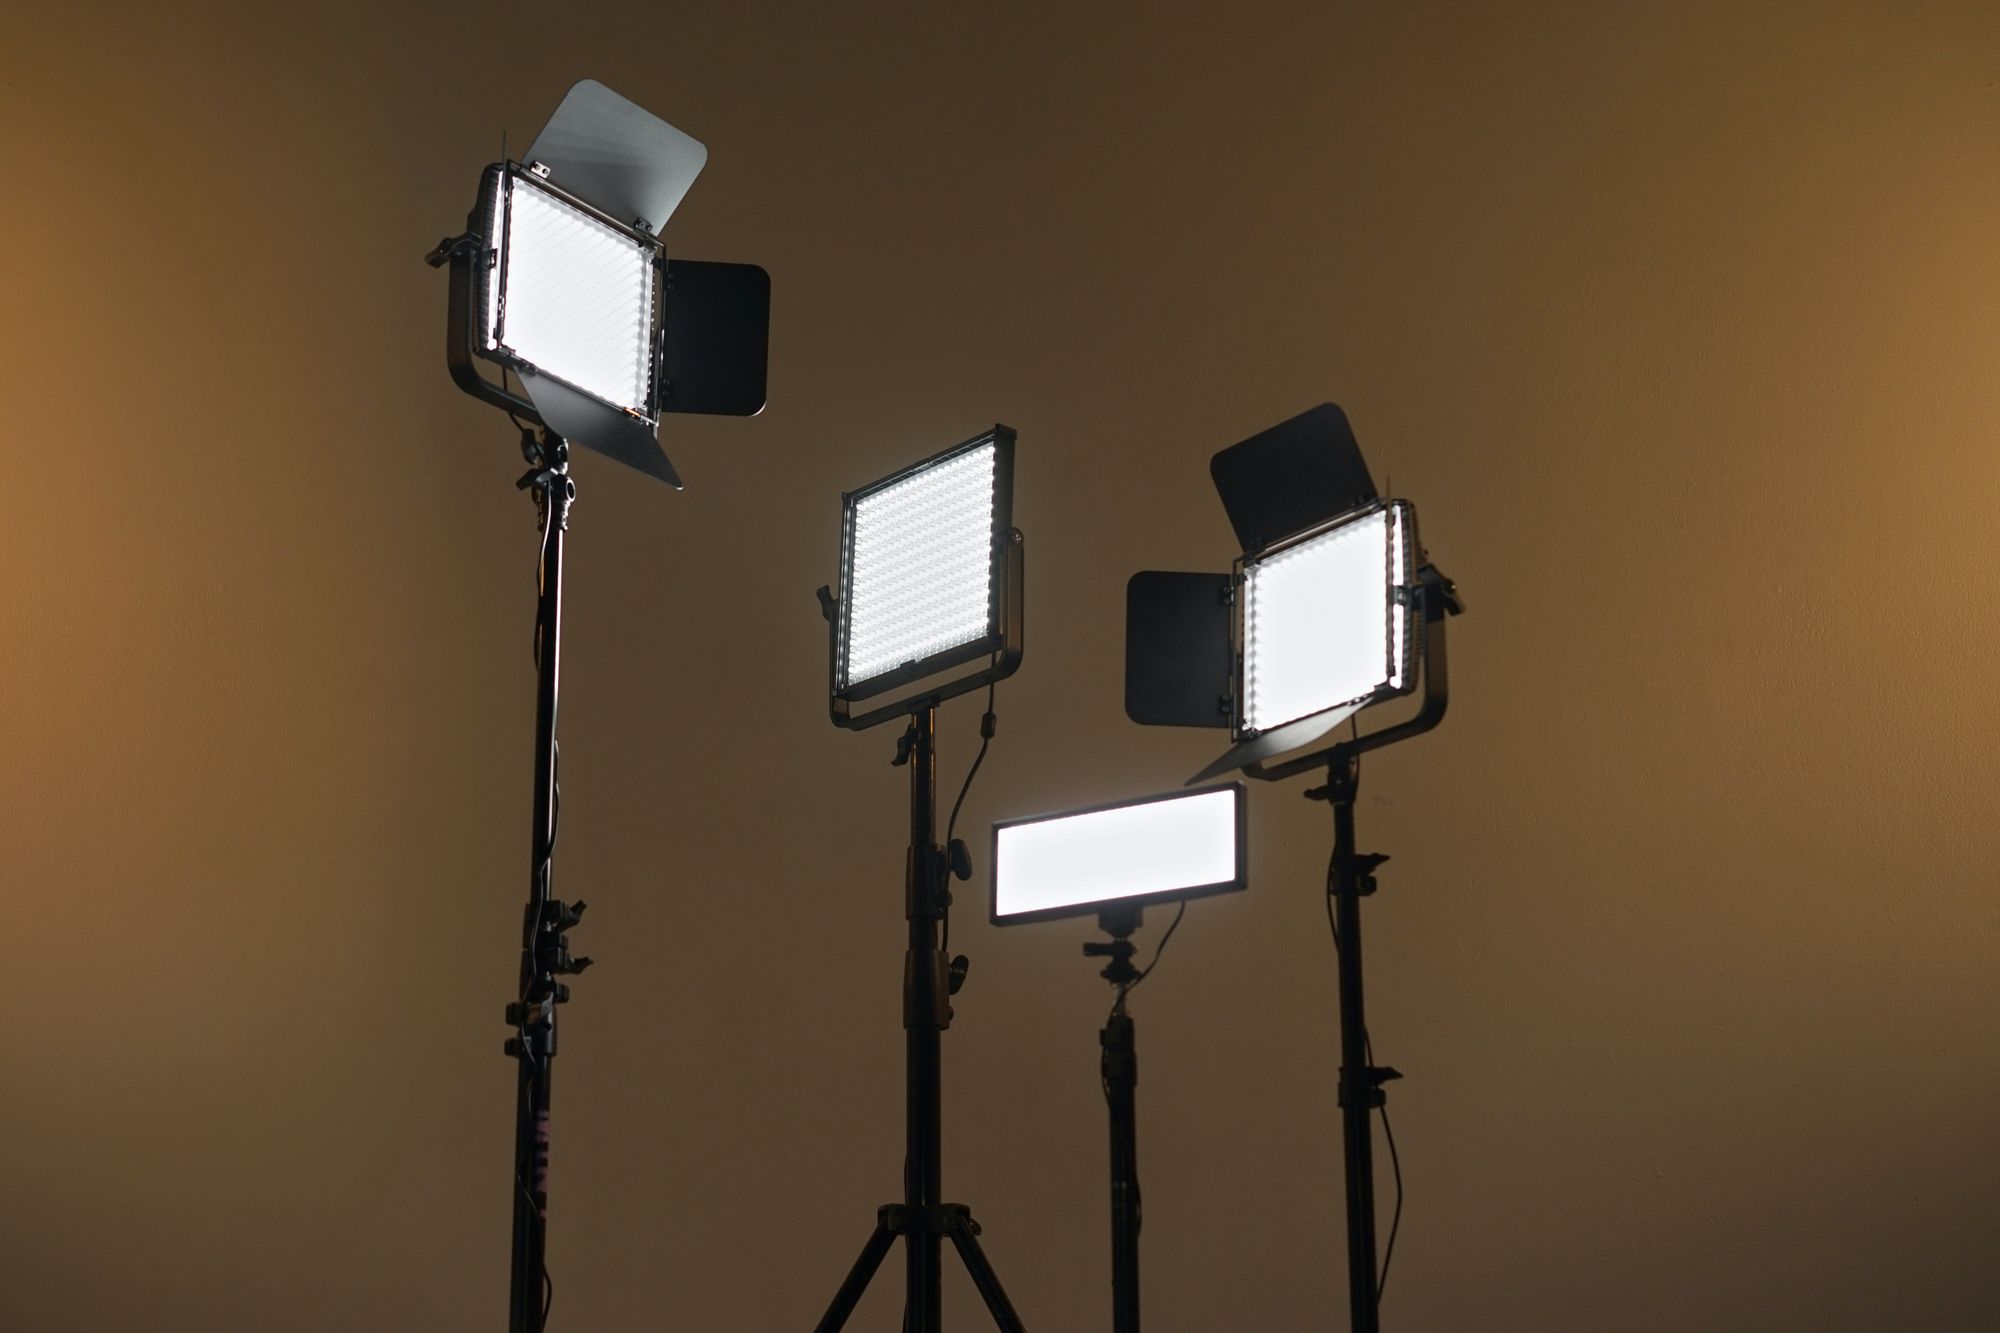 lighting setup for product photography